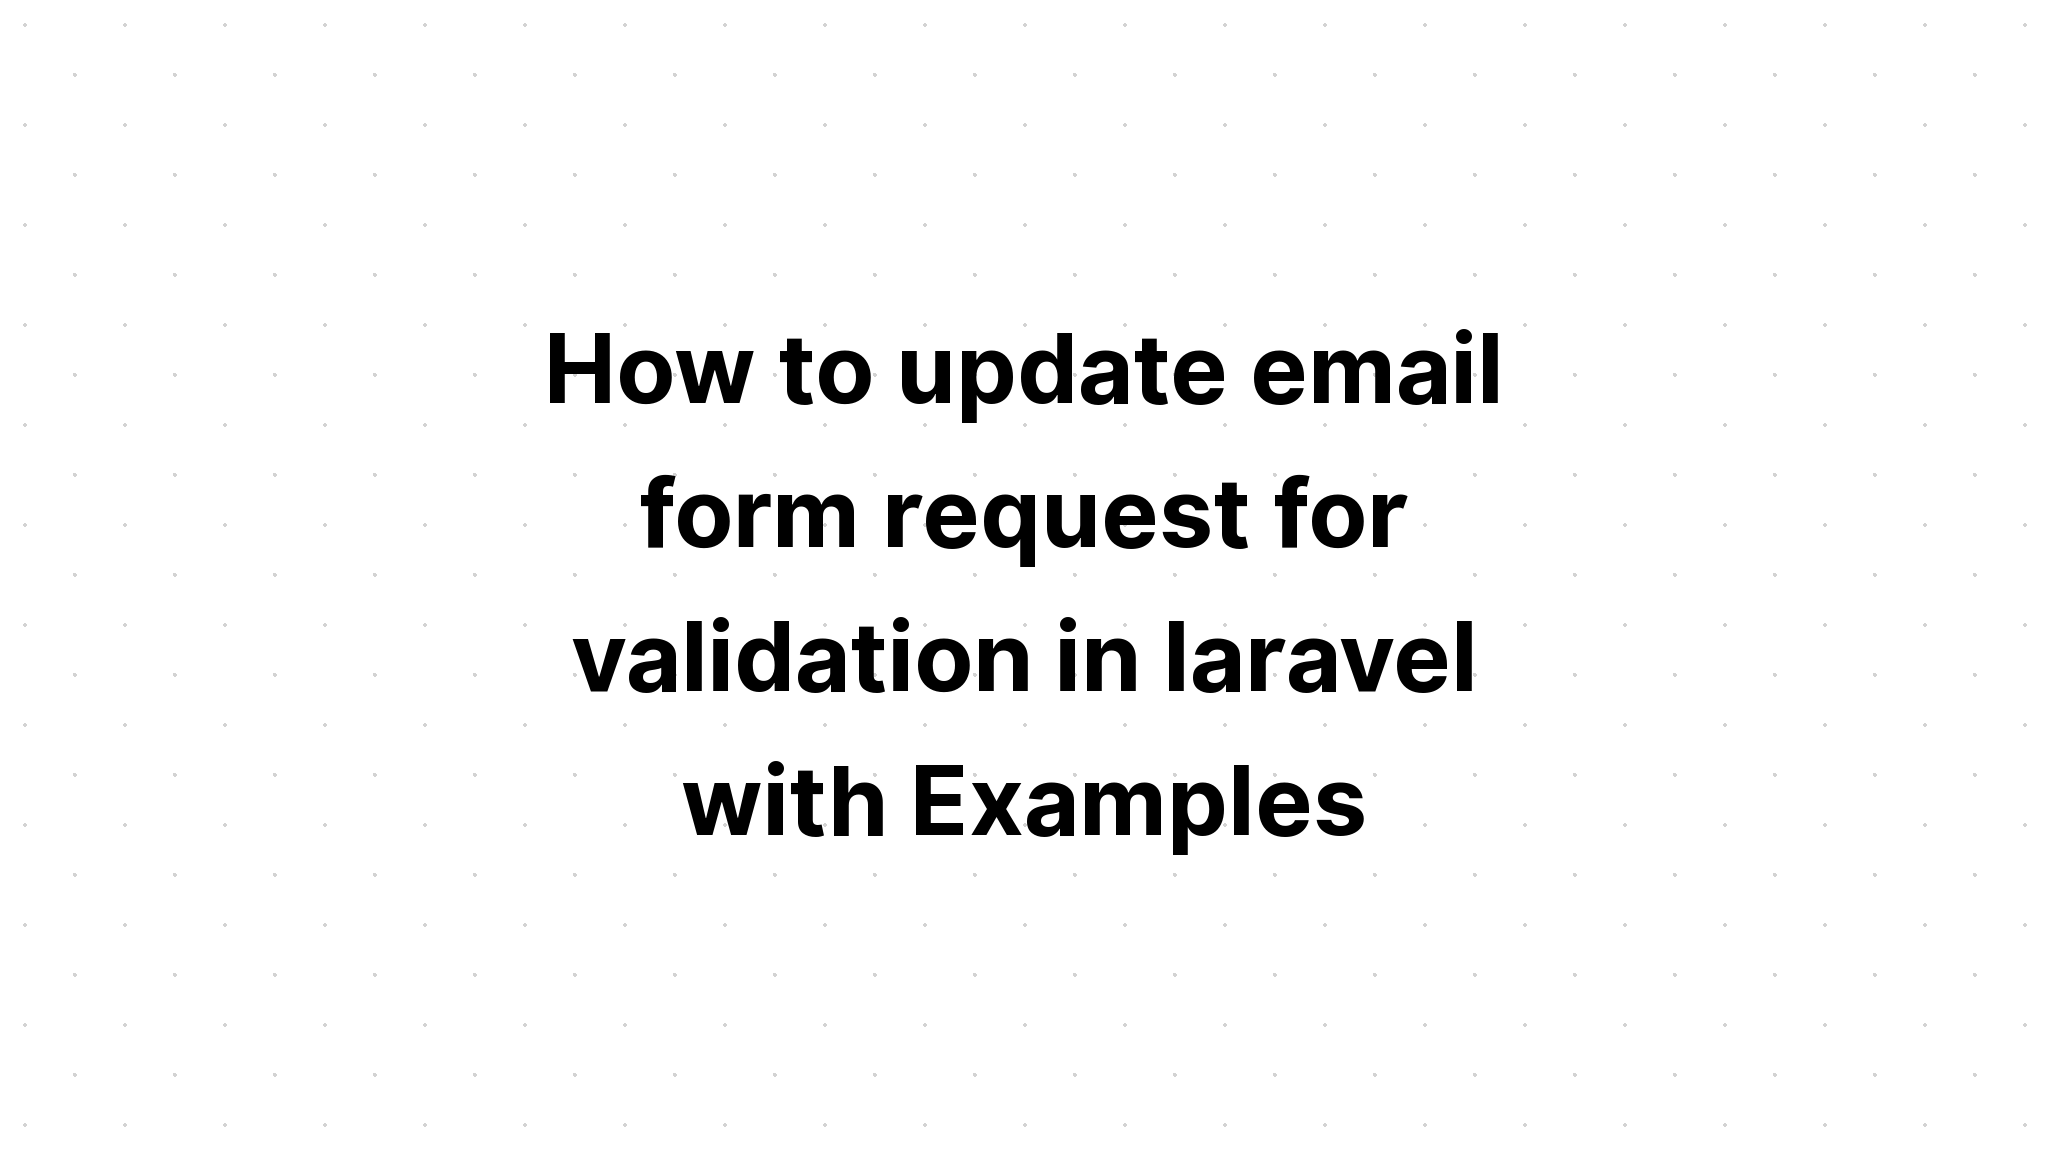 Cách cập nhật yêu cầu biểu mẫu email để xác thực trong laravel với các ví dụ